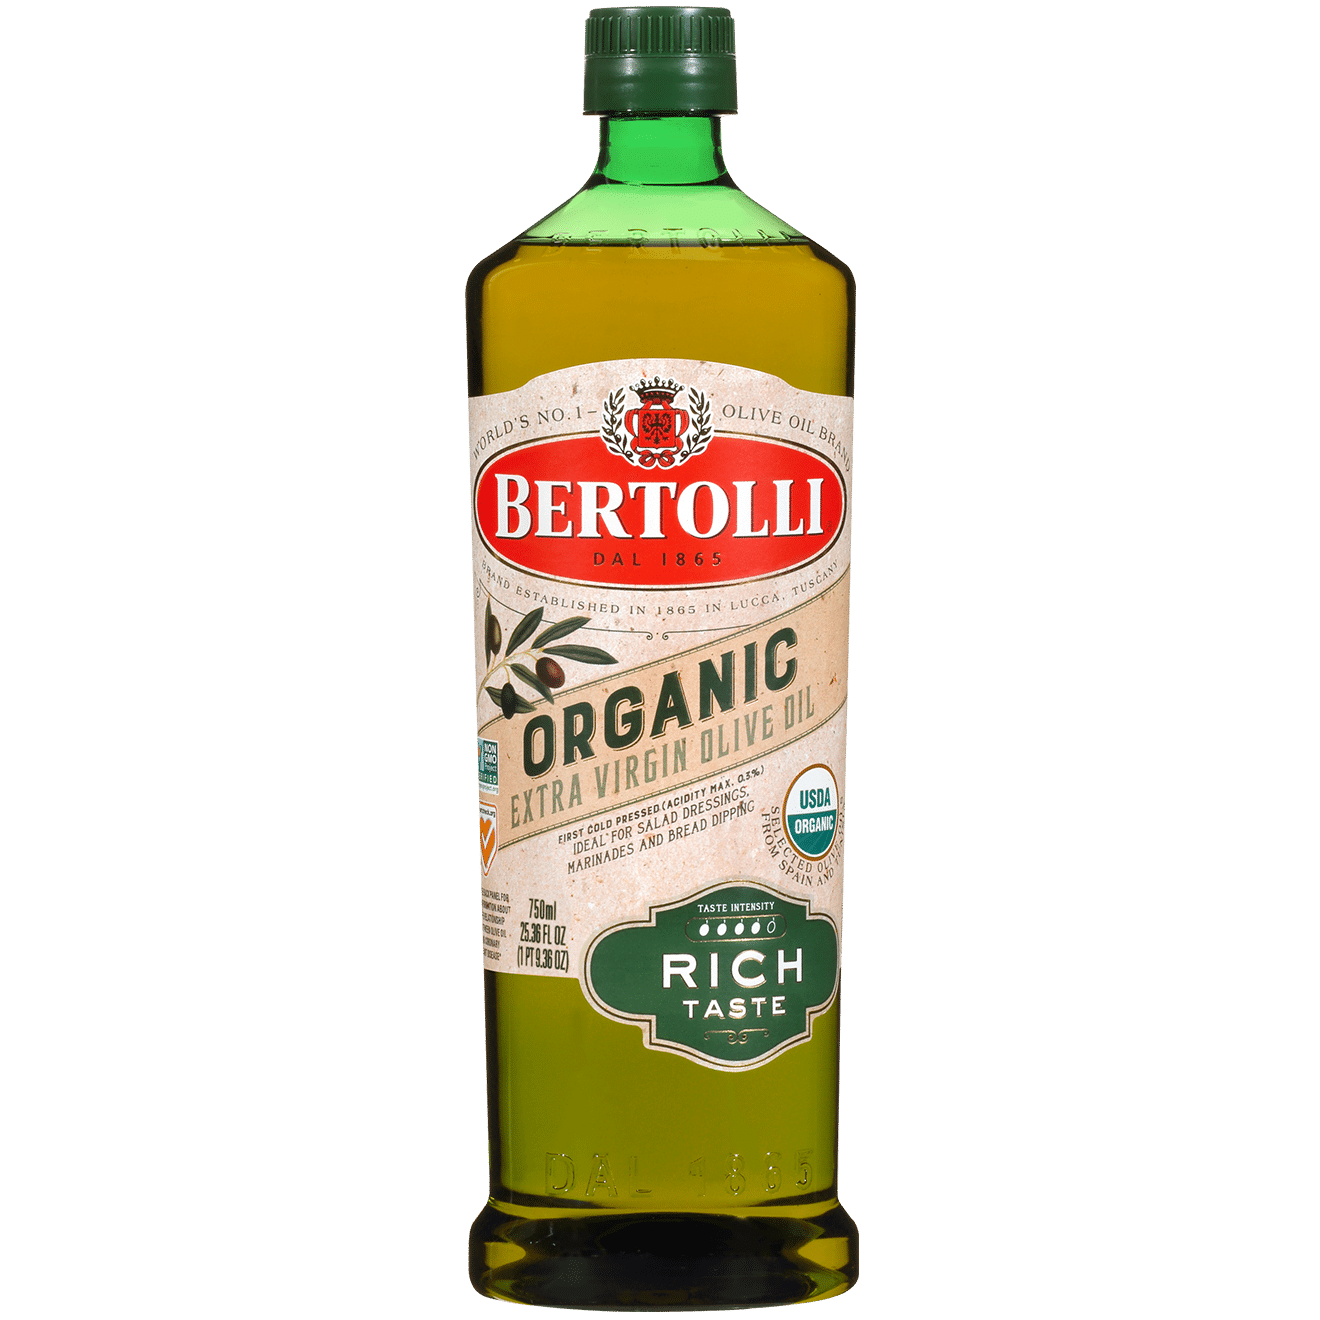 Great Value Extra Virgin Olive Oil, 101 fl oz Bottle